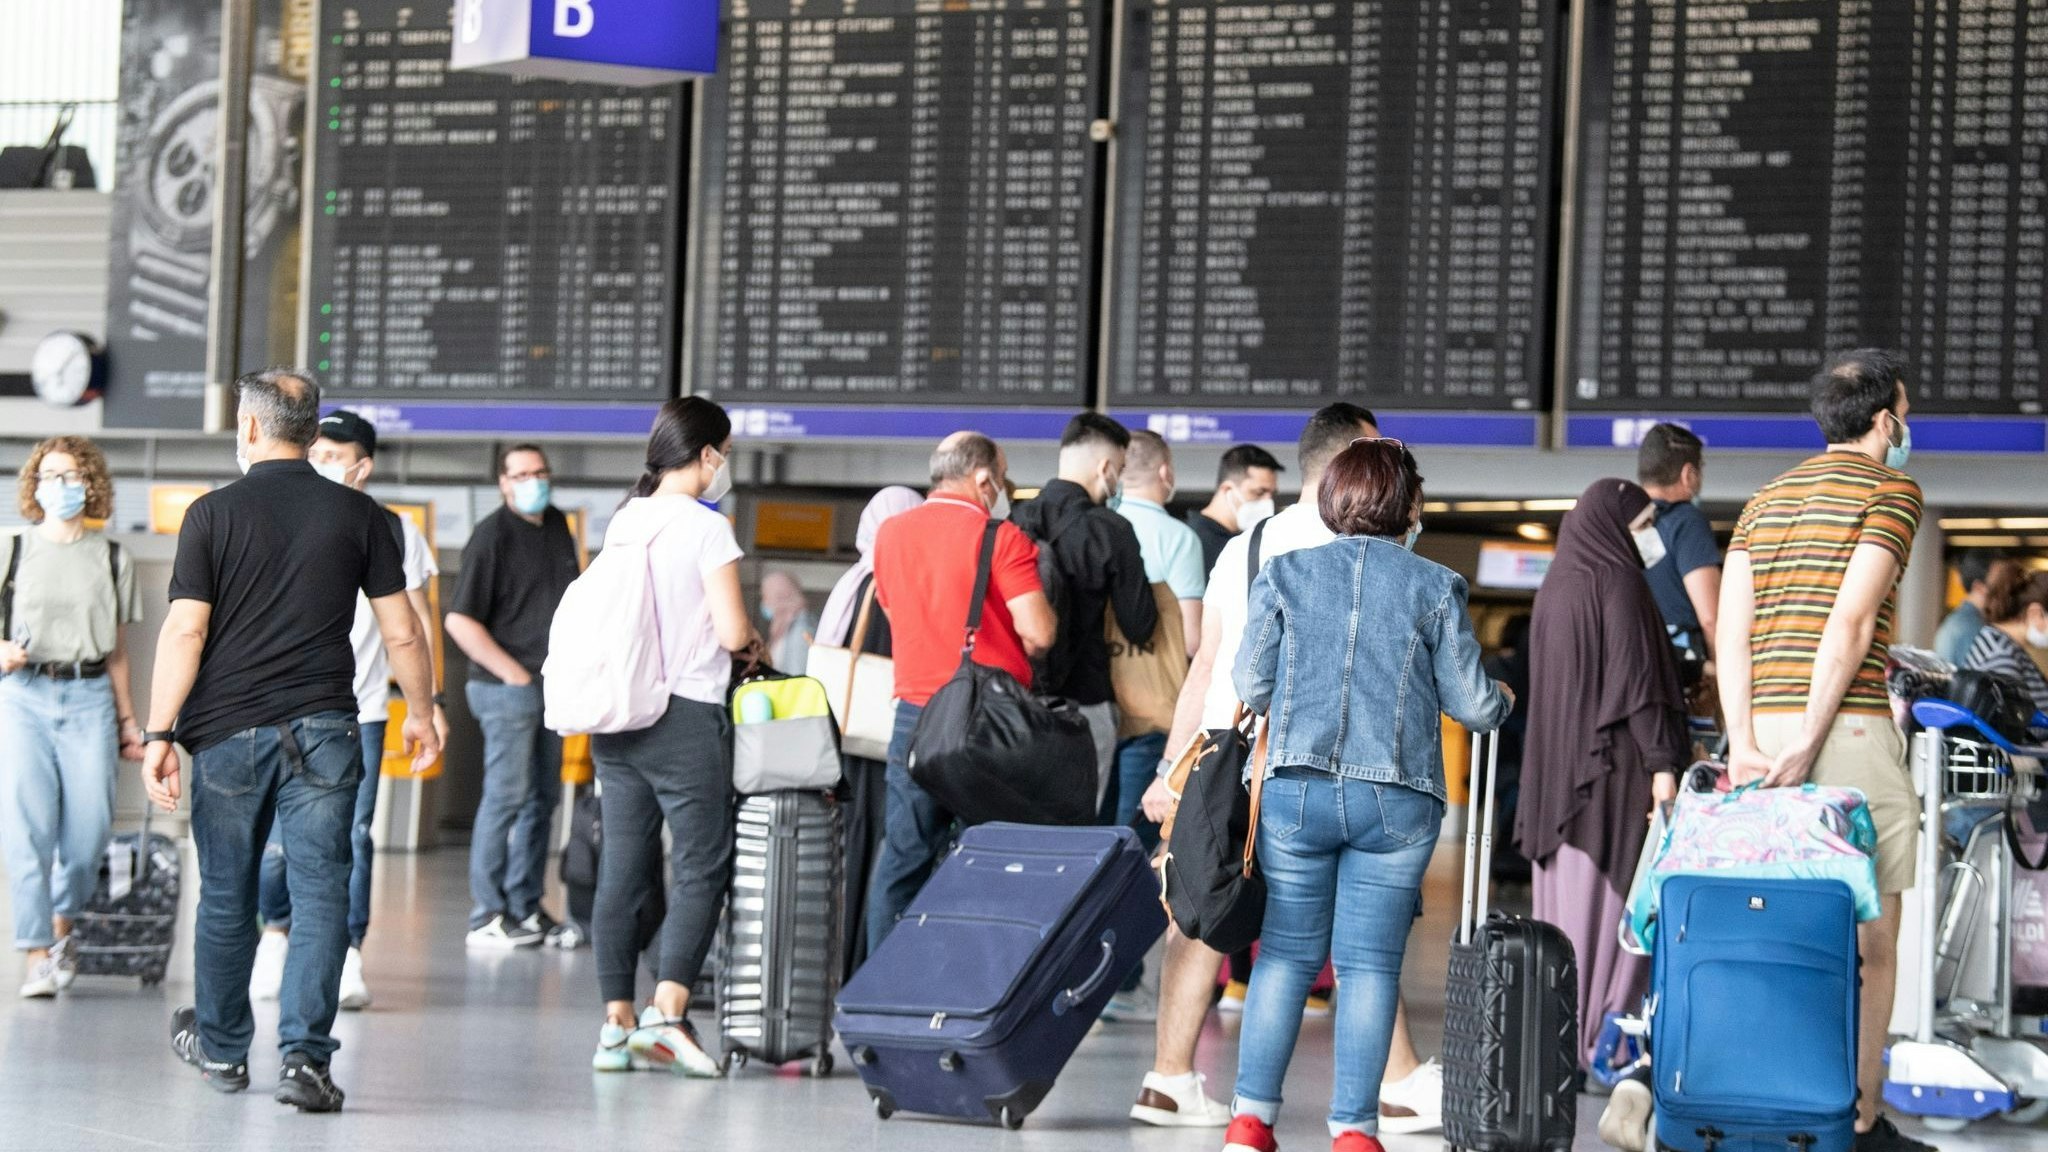 Passagiere auf dem Flughafen in Frankfurt am Main. Wer aus China einreist, muss sich auf Corona testen lassen. Foto: dpa/Roessler